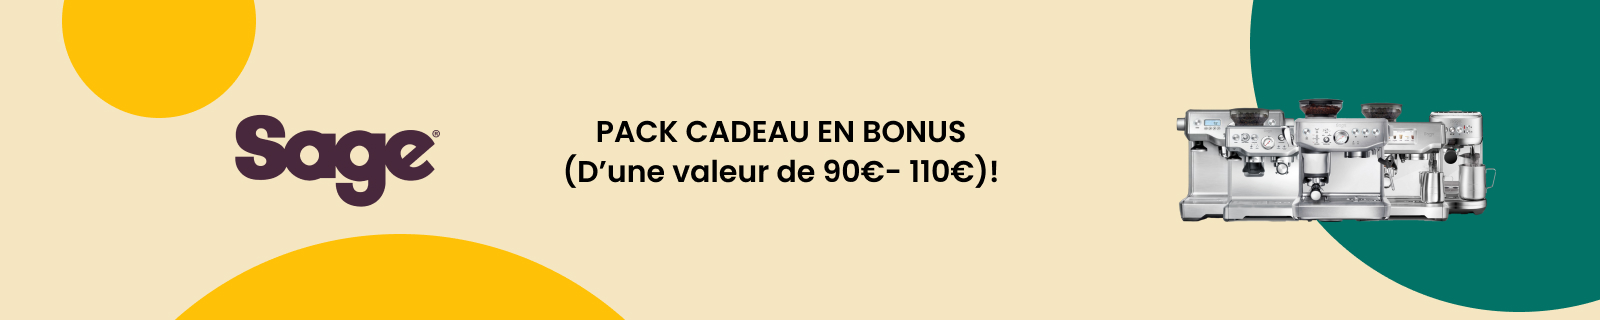 PACK CADEAU EN BONUS (D’une valeur de 110€)! 